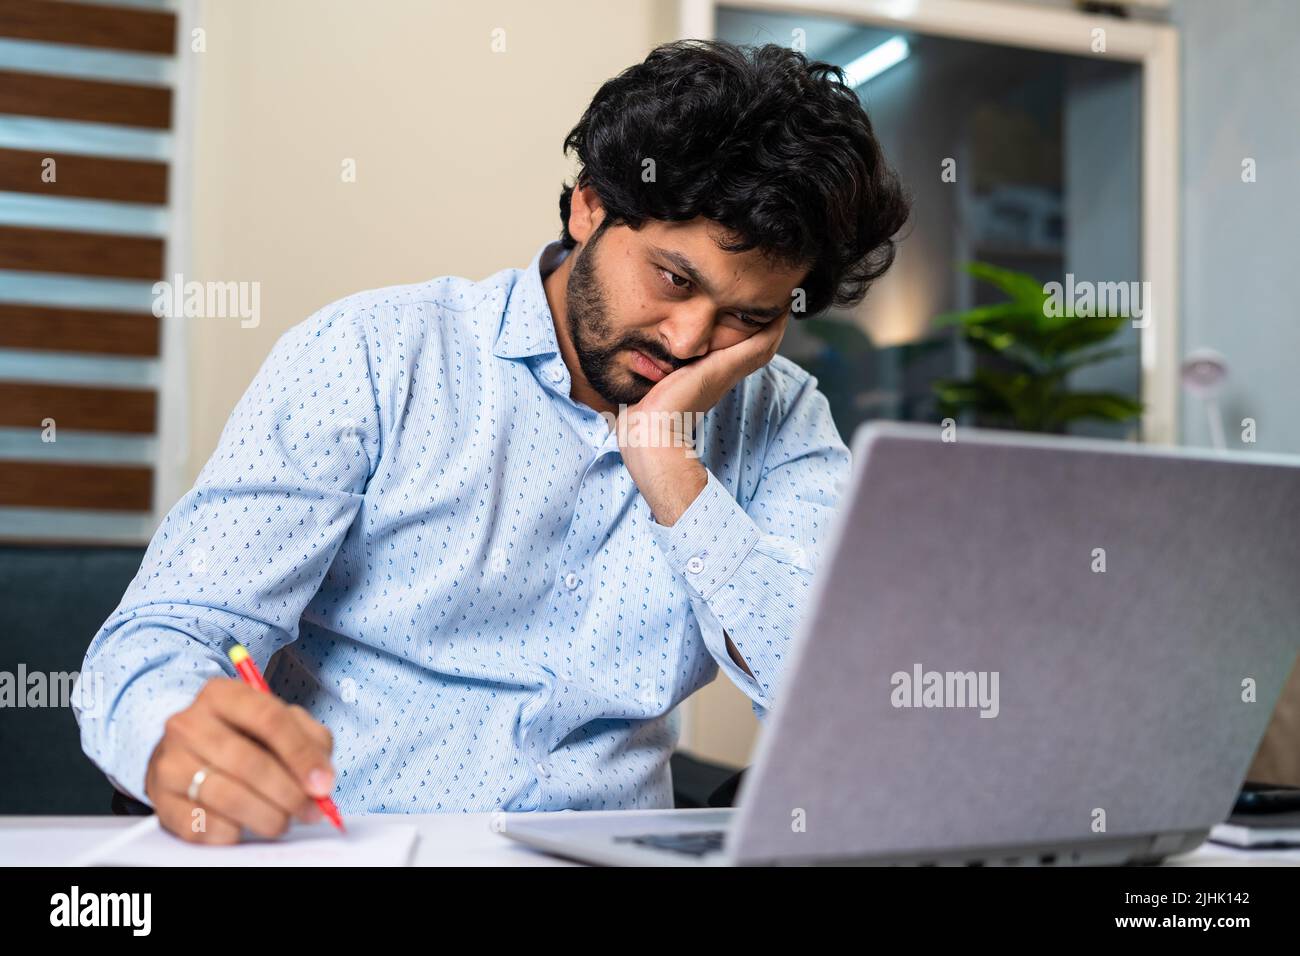 Jeune homme fatigué en travaillant sur un ordinateur portable en prenant des notes au bureau - concept de frustration professionnelle, de la vie de travail de routine et de l'épuisement. Banque D'Images